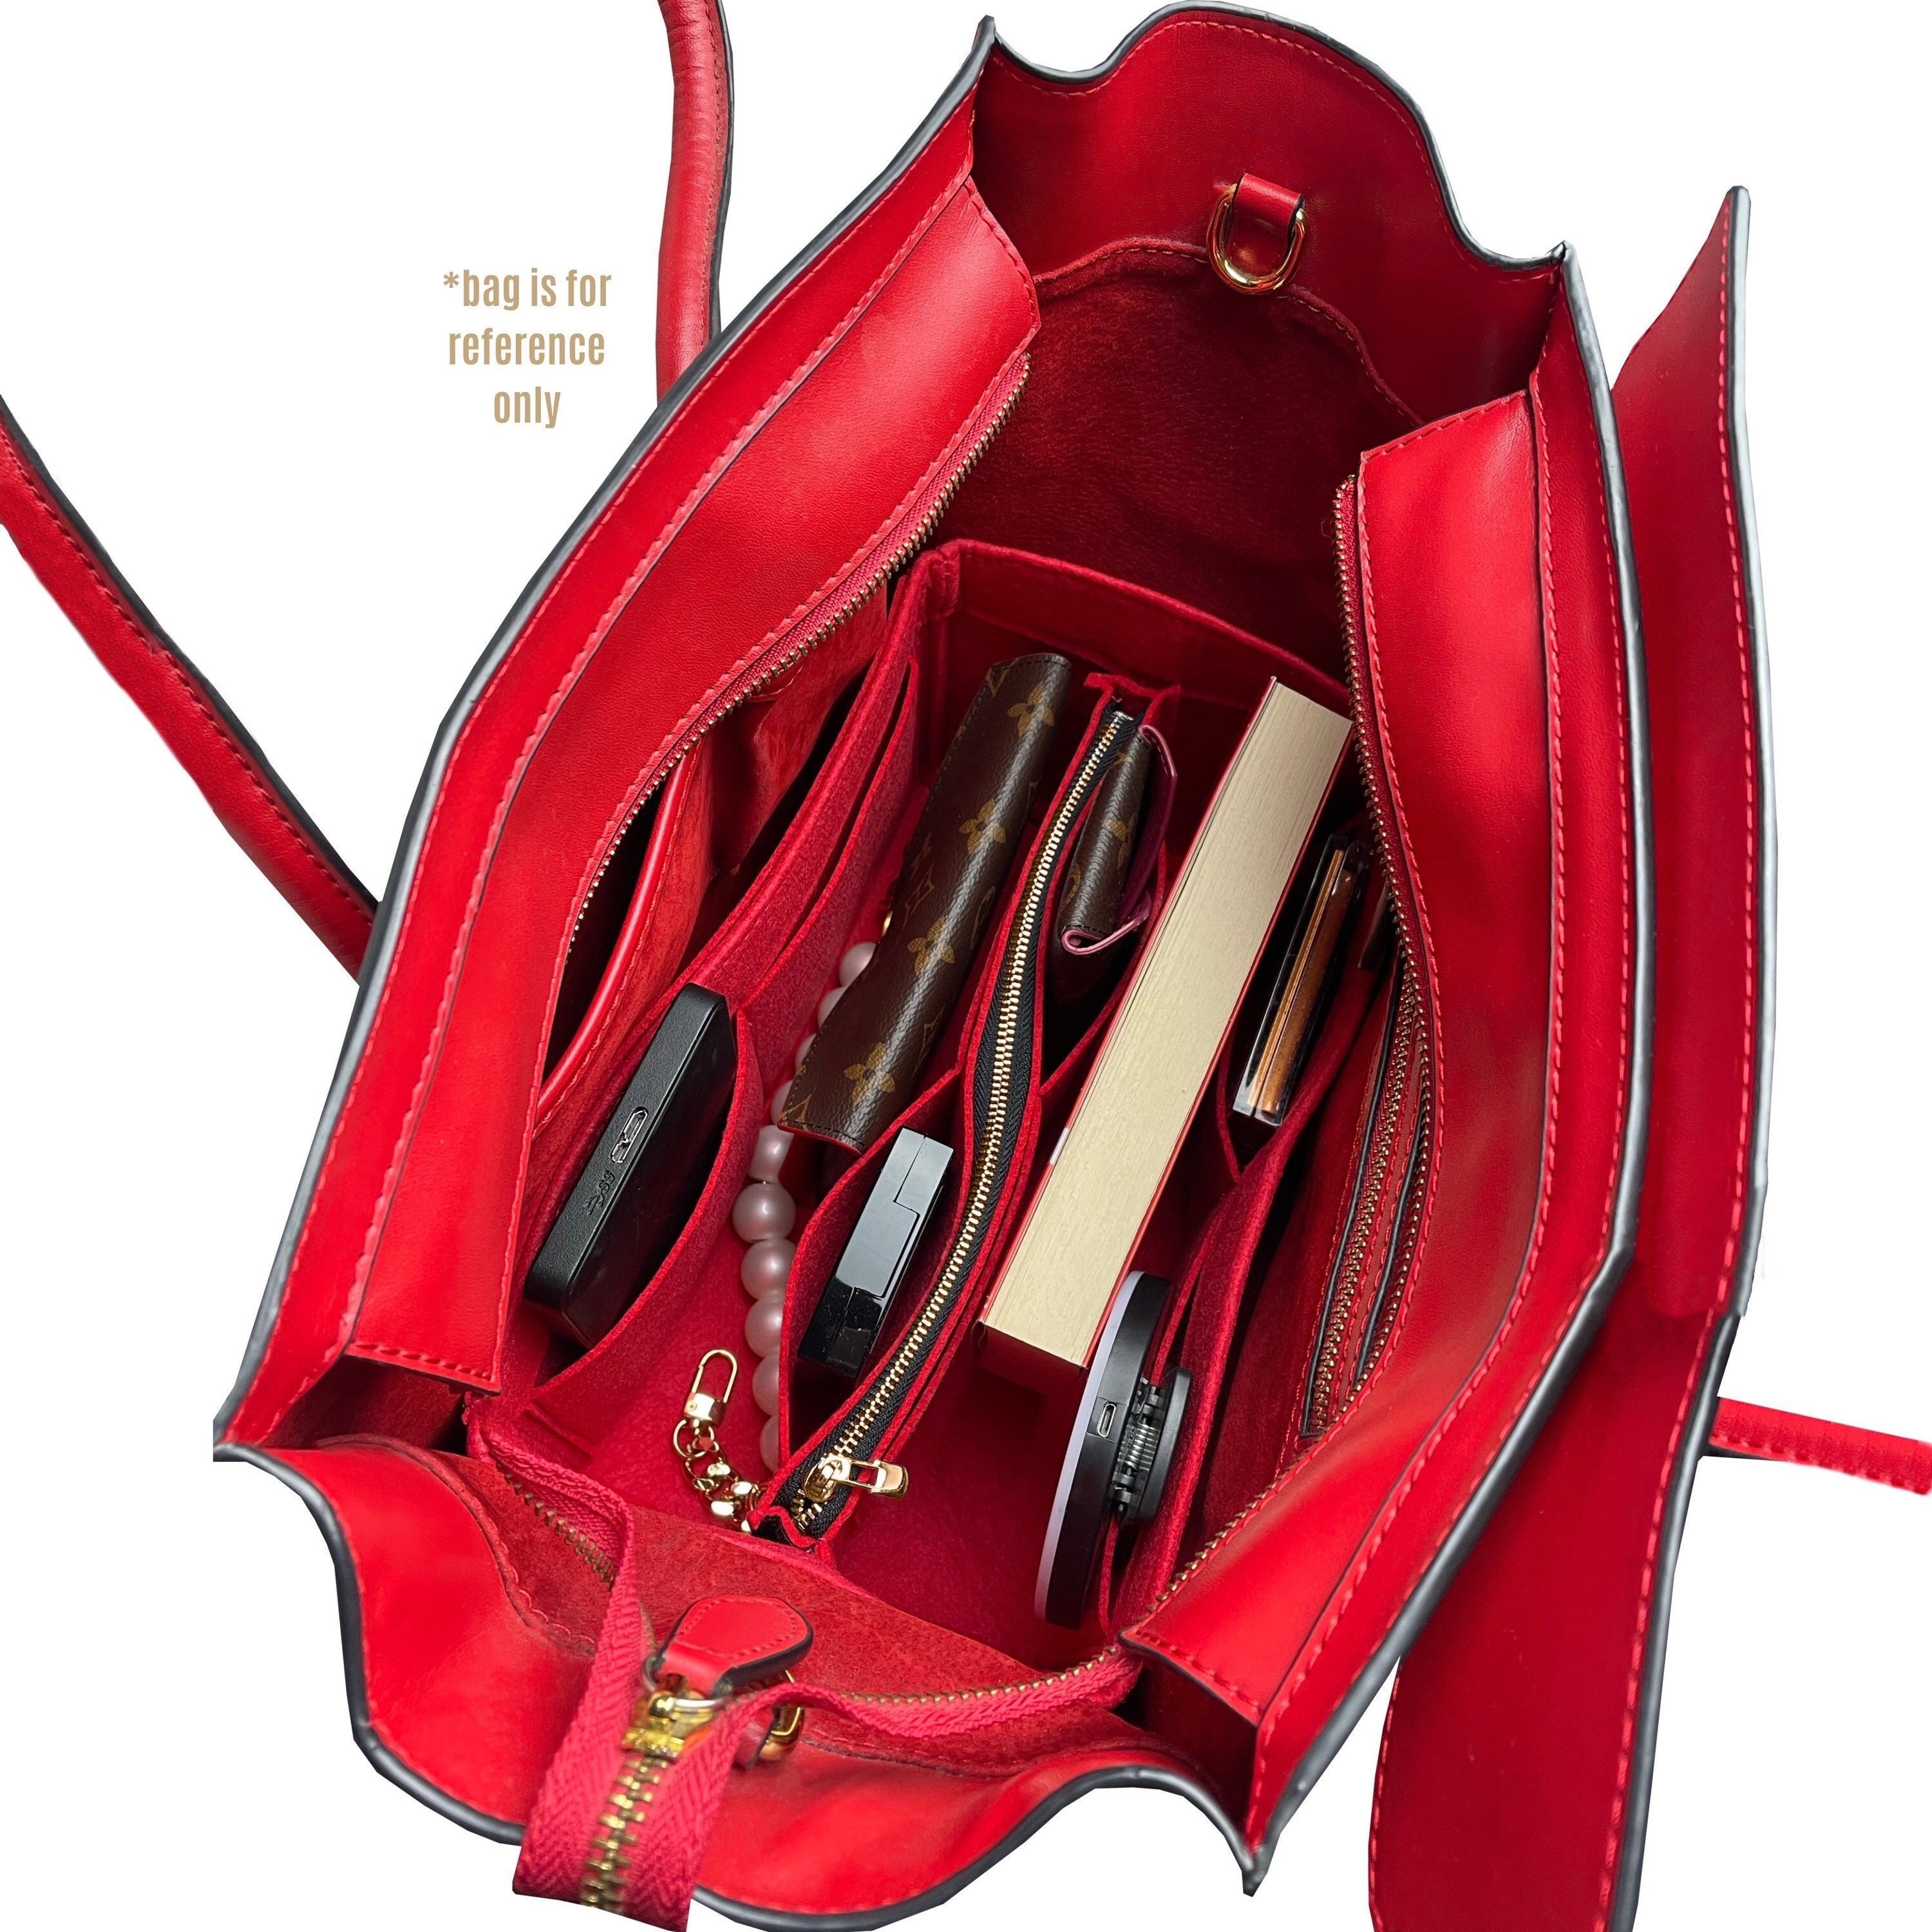  Bag Organizer for LV Nano Speedy Bag - Premium Felt  (Handmade/20 Colors) : Handmade Products